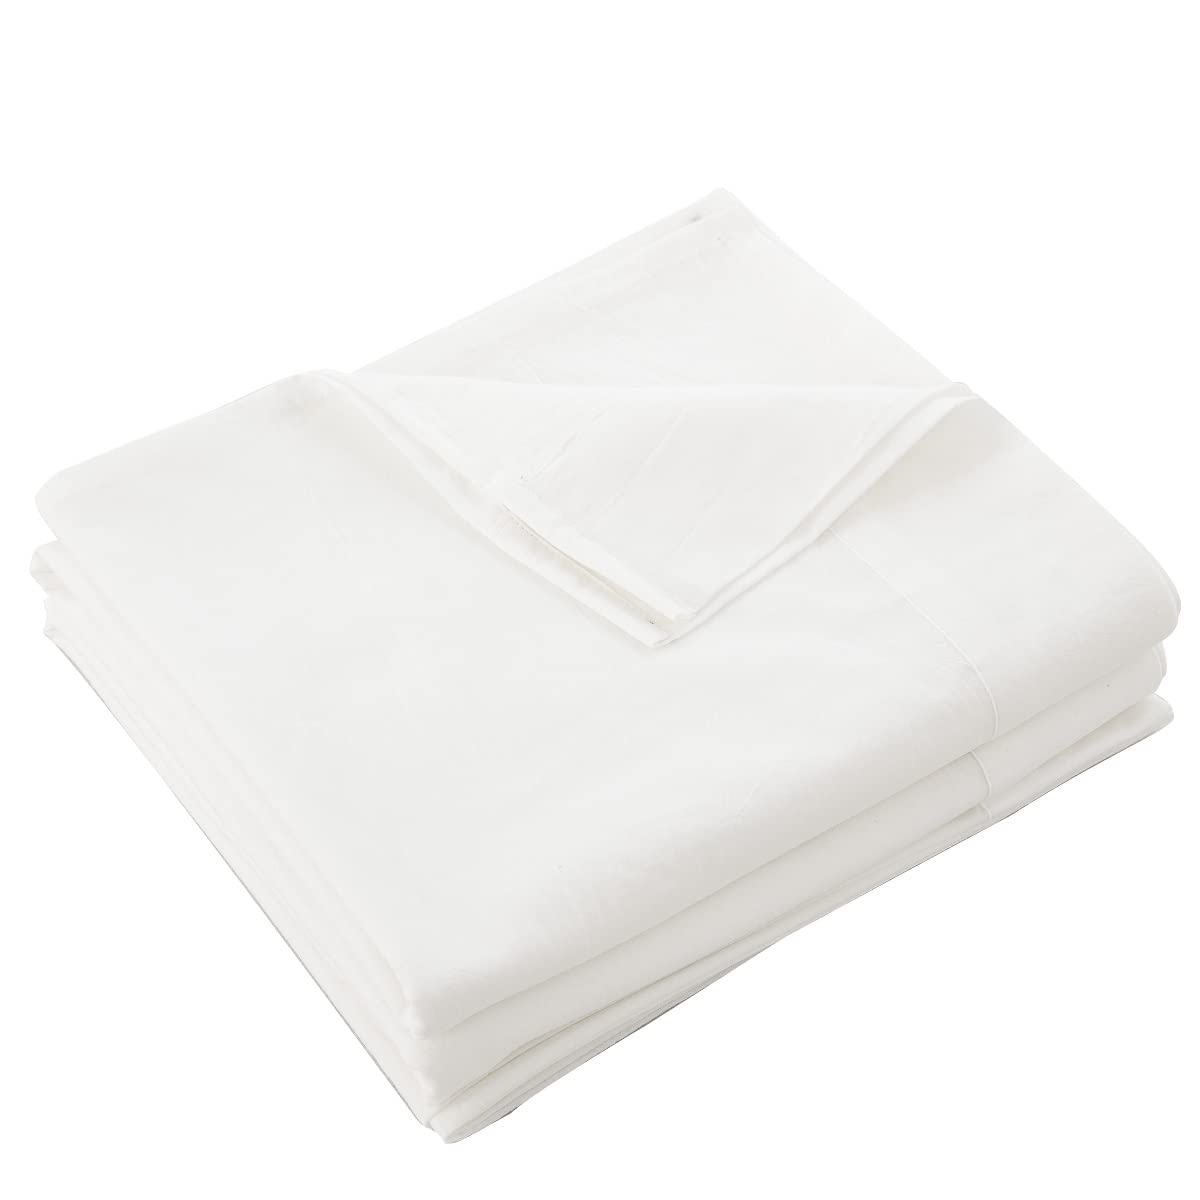 【サイズ】250x260cm（シーツの枕側が簡単に分かりますように、8センチの折り返しをしております。この商品はゴムのないフラットシーツです。）【オーガニックコットン洗いざらしの綿100%】洗いざらし仕上げにより最初から肌になじむように仕上げました。洗濯後のシワも味わいになる洗いざらしの綿です。洗いざらし綿はまるでお洋服のようで、使い込んだ綿だけが持つ風合いに、肌に優しくなじむ柔らかな肌ざわりです。【フラットタイプ】1枚の布で、ベッドマットレス用にも敷き布団用にもなります。一枚ものの昔からあるシーツ。敷き布団などに敷き周囲を折り込んでいくタイプです。布団のサイズが特殊でもシーツより小さかったら対応できる。アッパーシーツは、(仰向けに寝られた場合、体の上に触れる部分です)羽毛ベッドカバーやお布団が直接体に触れて汚れるのを防ぎ、清潔に保ちます。【お手入れ方法】：極上の肌触りを長持ちさせるため手濯いがおすすめですが、洗濯機使用可です。こまめなお手入れができ清潔にお使い頂けます。また、洗濯を重ねるうちに生地も柔らかくなりお肌に馴染みやすくなり、より心地よくなります。洗い替え用に、お客様用に、何枚あっても重宝します。【品質保証】：买い物に不満があれば、无条件に返金いたします。全商品品質保証対応しておりますので、ご気楽にご連絡ください。